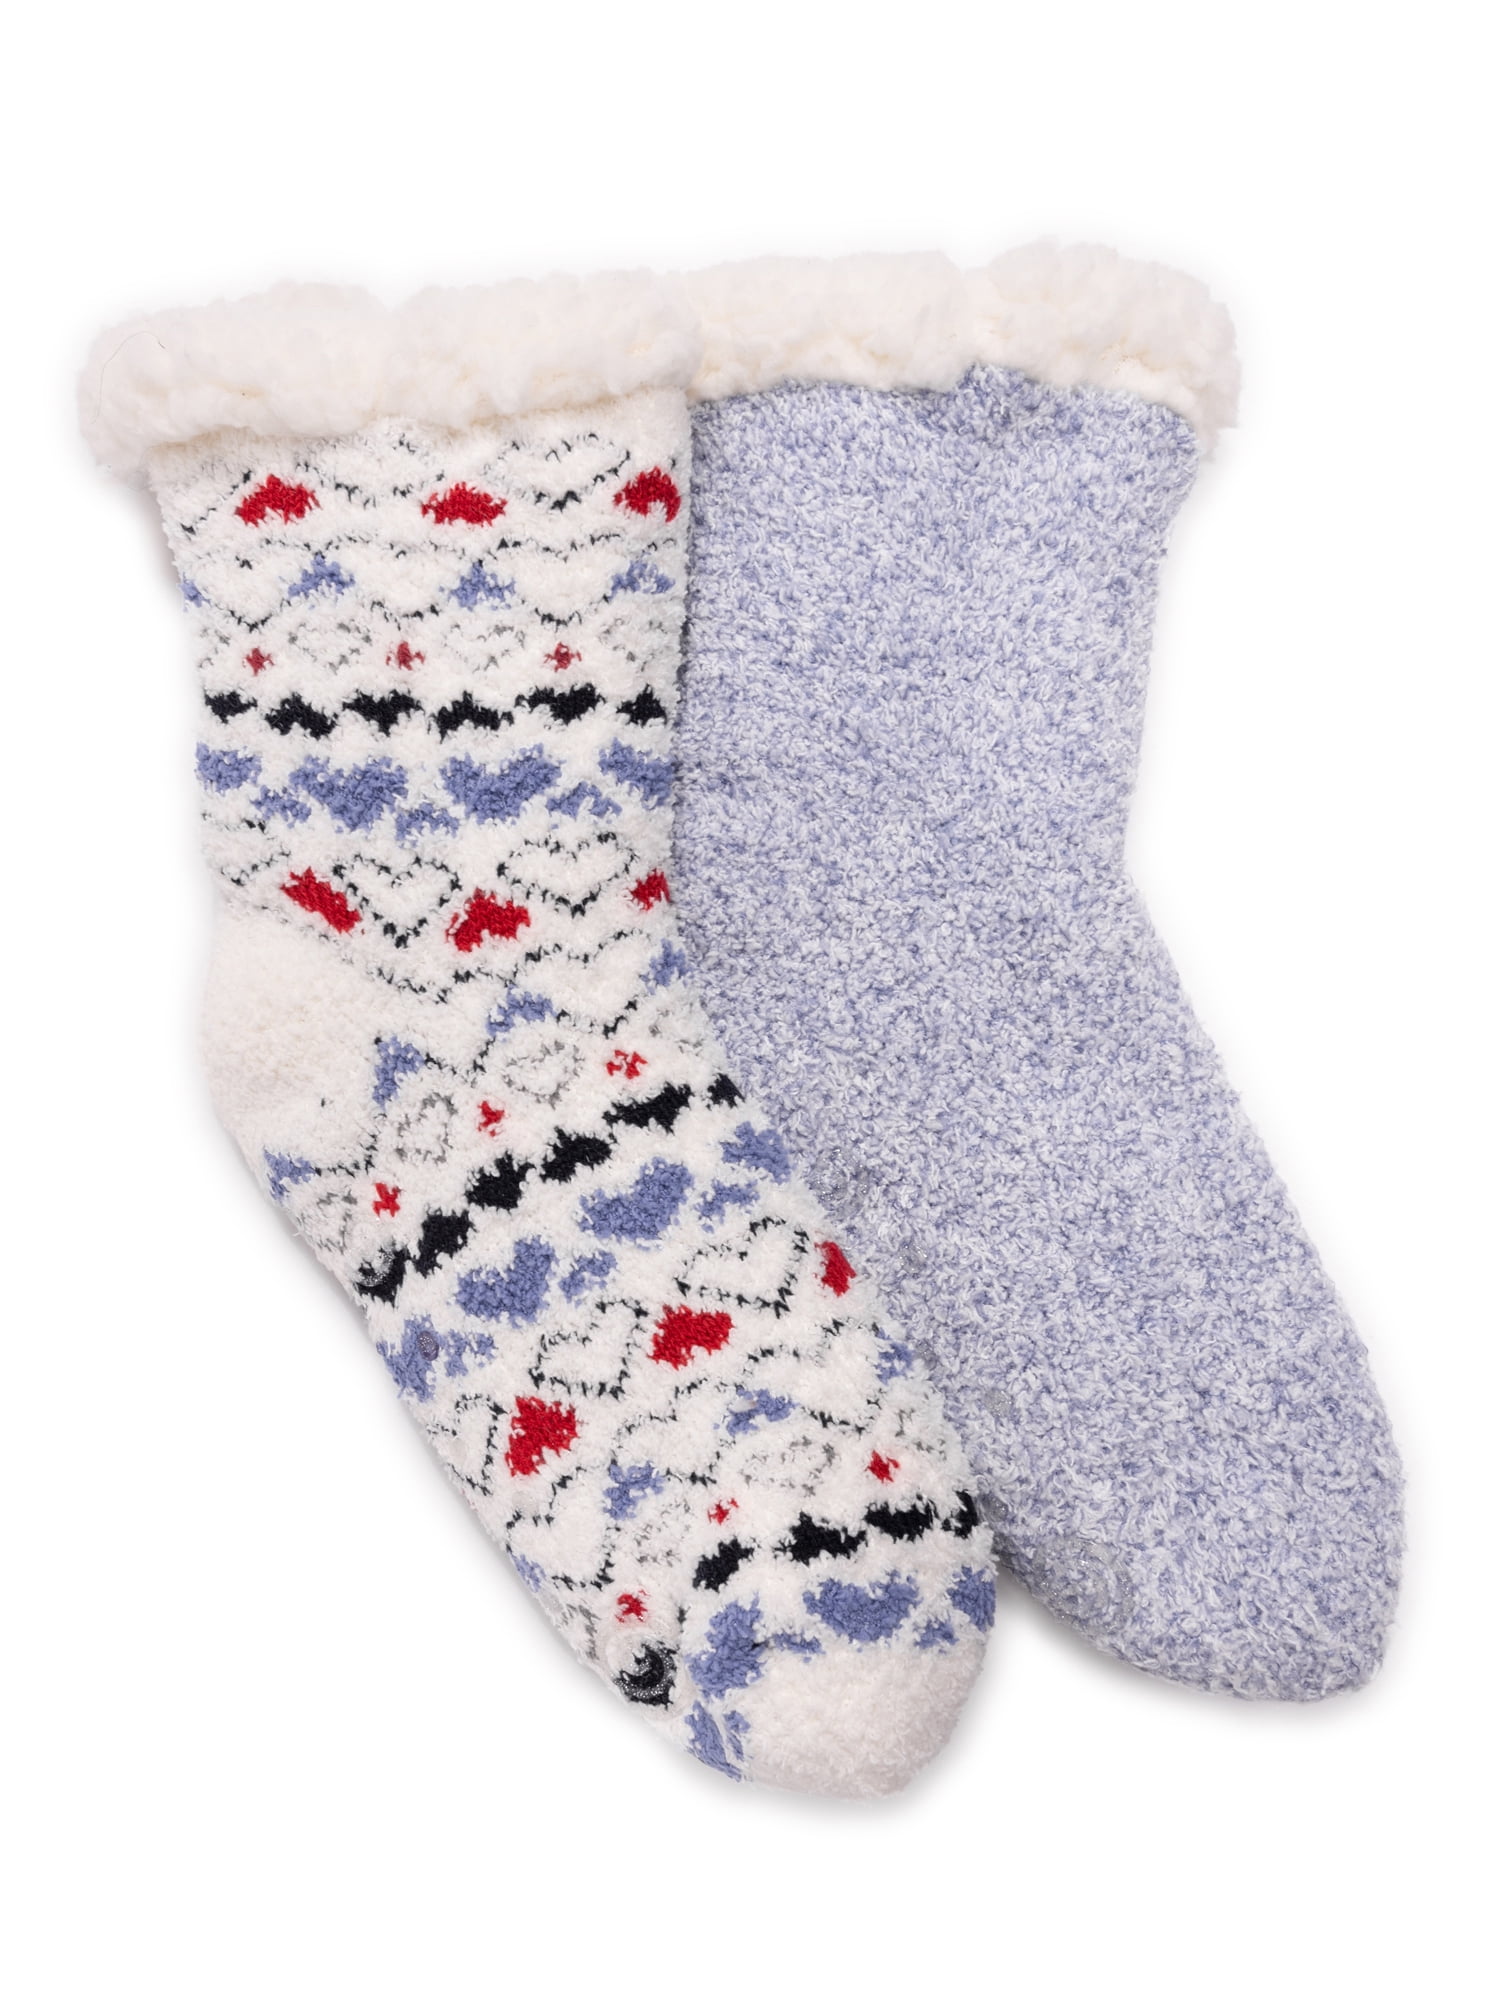 Womens Knee High Socks 2 Pairs Best For Running Christmas Brush Strokes Long Socks For Women